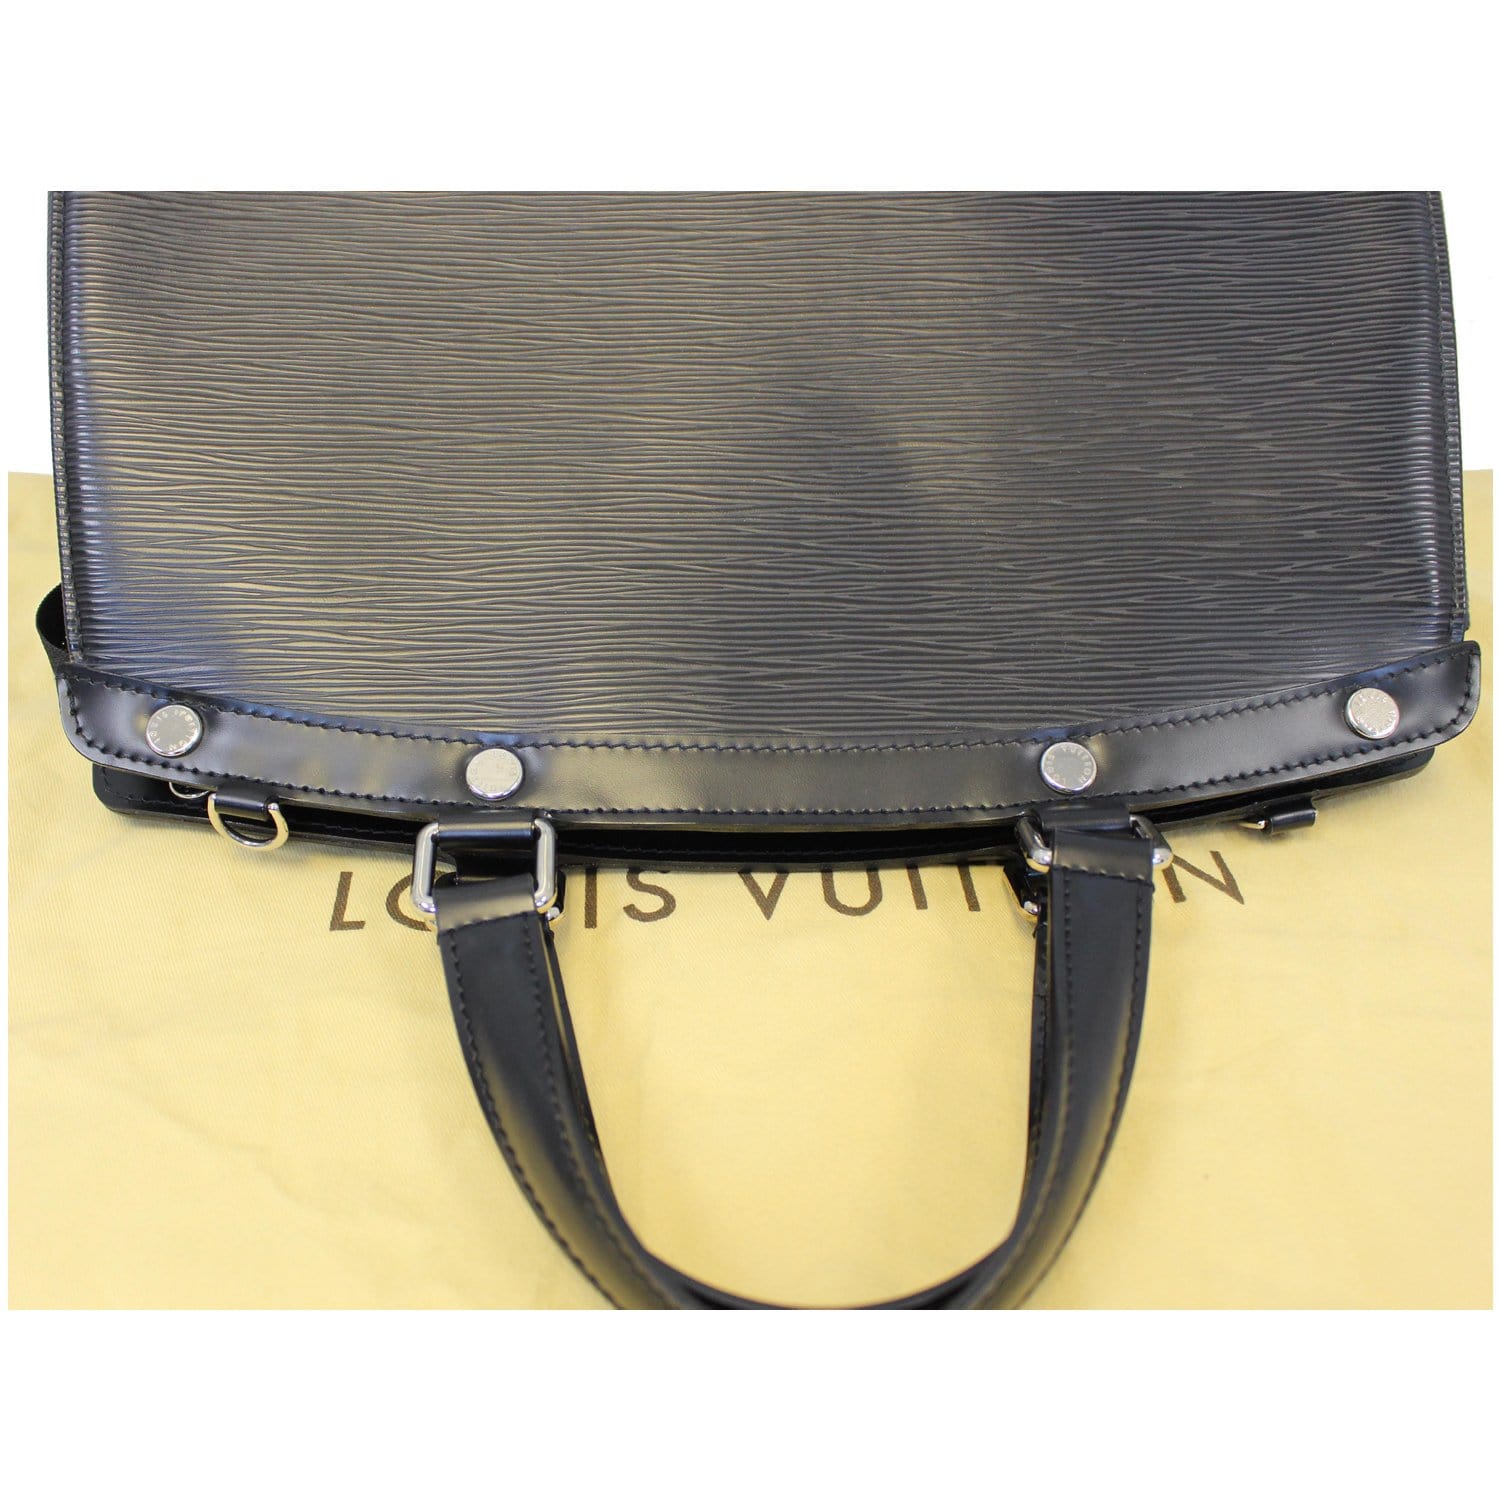 Lv Blue Epi Leather Brea Mm Hand Bag/shoulder Bag